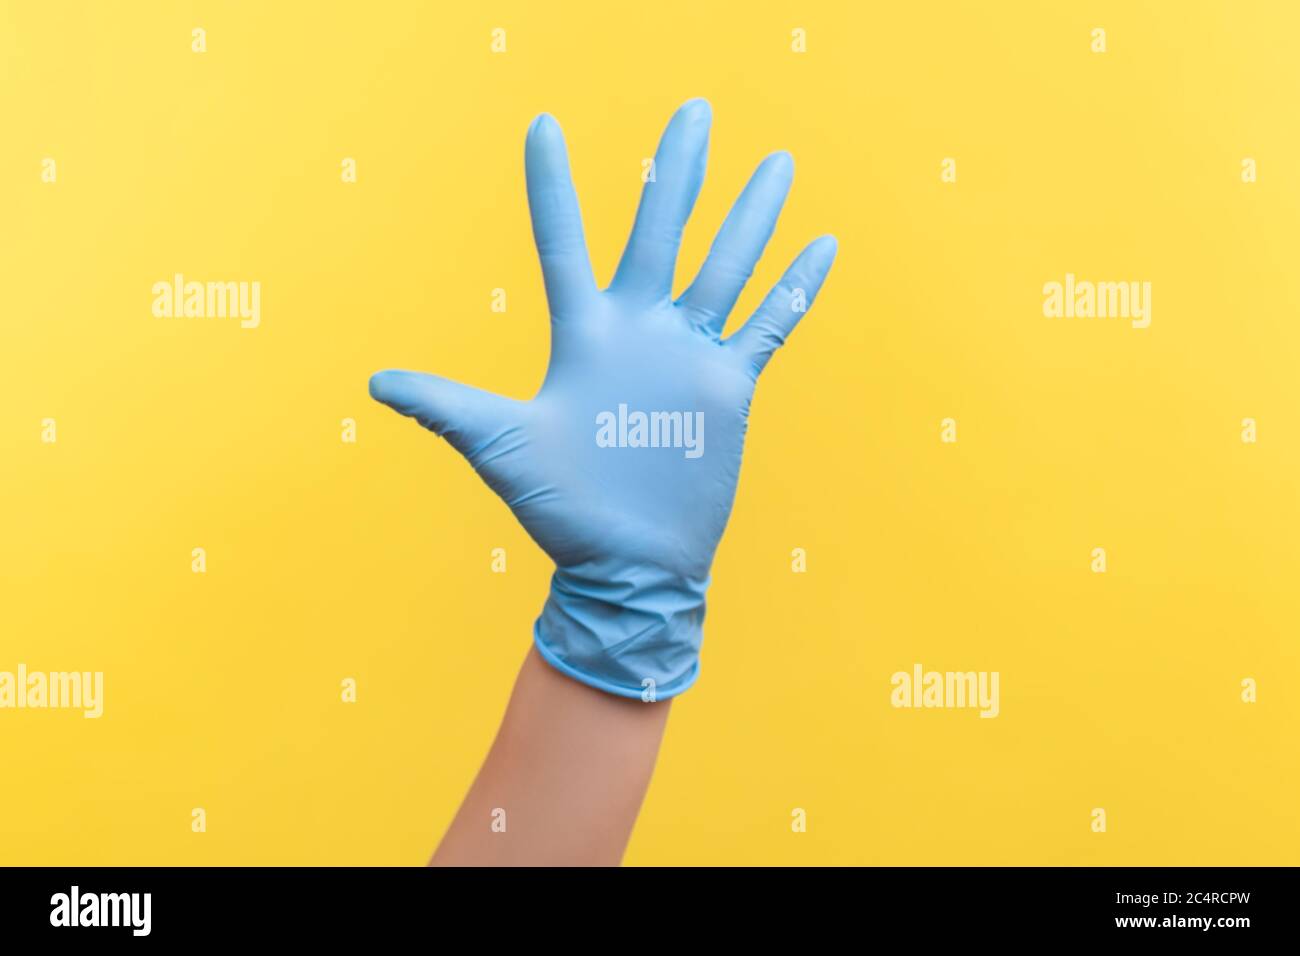 Profilo Vista laterale primo piano della mano umana in guanti chirurgici blu che mostrano il numero cinque con la mano o con la mano che ondeggiano per salutare. Interno, studio shot, isolare Foto Stock